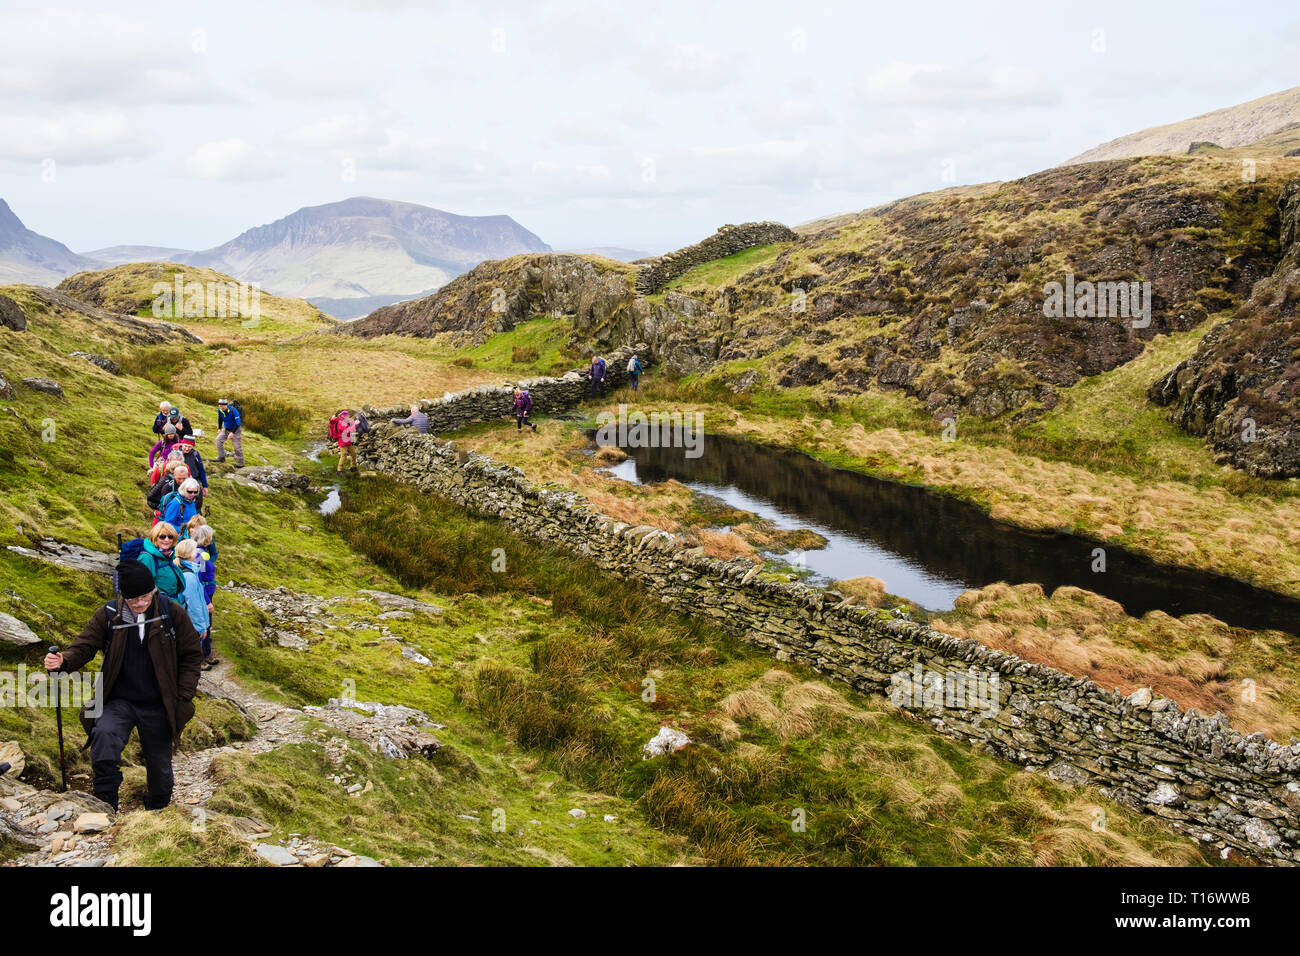 Ramblers Gruppe Wandern auf dem Weg bis Jahre Aran Mountain North Ridge in den Bergen von Snowdonia National Park. Gwynedd, Wales, Großbritannien, Großbritannien Stockfoto